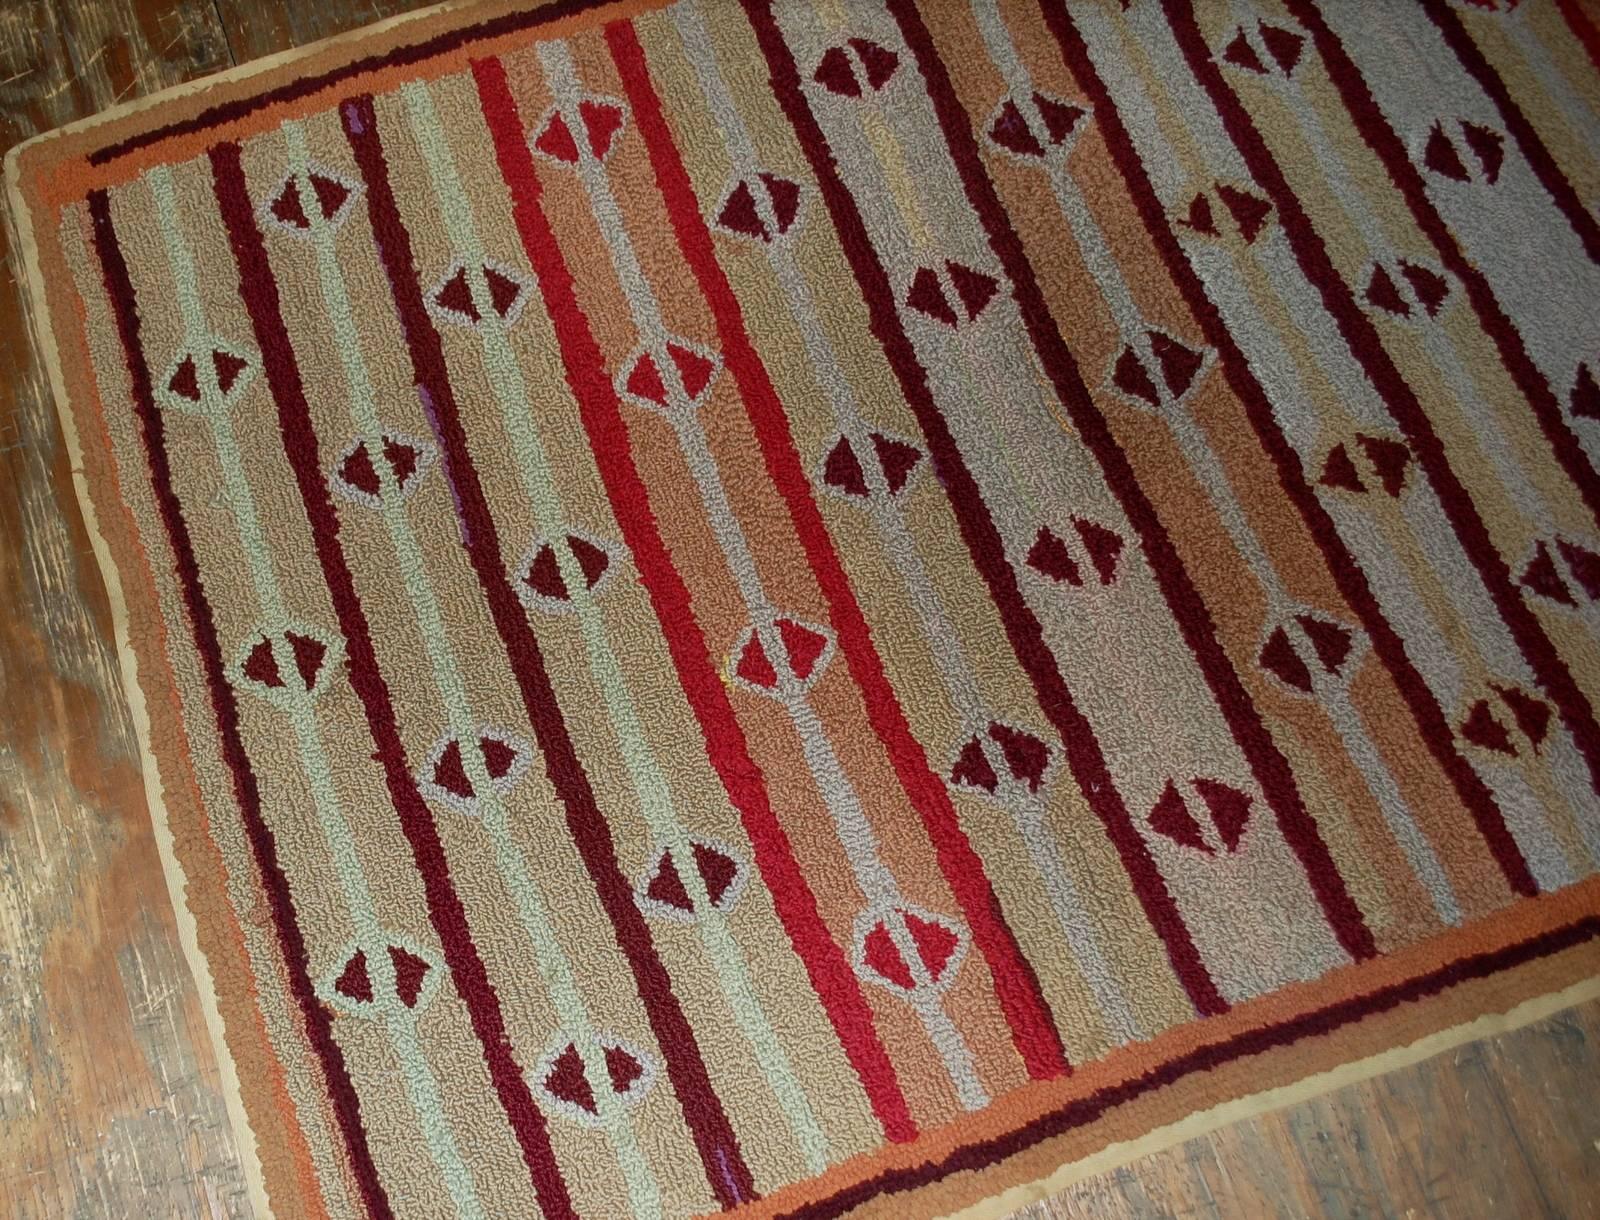 Handgefertigter antiker amerikanischer Hakenteppich in gutem Zustand. Der Teppich ist in geometrischem Design gefertigt. Sich wiederholendes rautenförmiges Muster auf bunten Streifen auf dem ganzen Teppich. Sehr dünne bordeauxfarbene Umrandung des